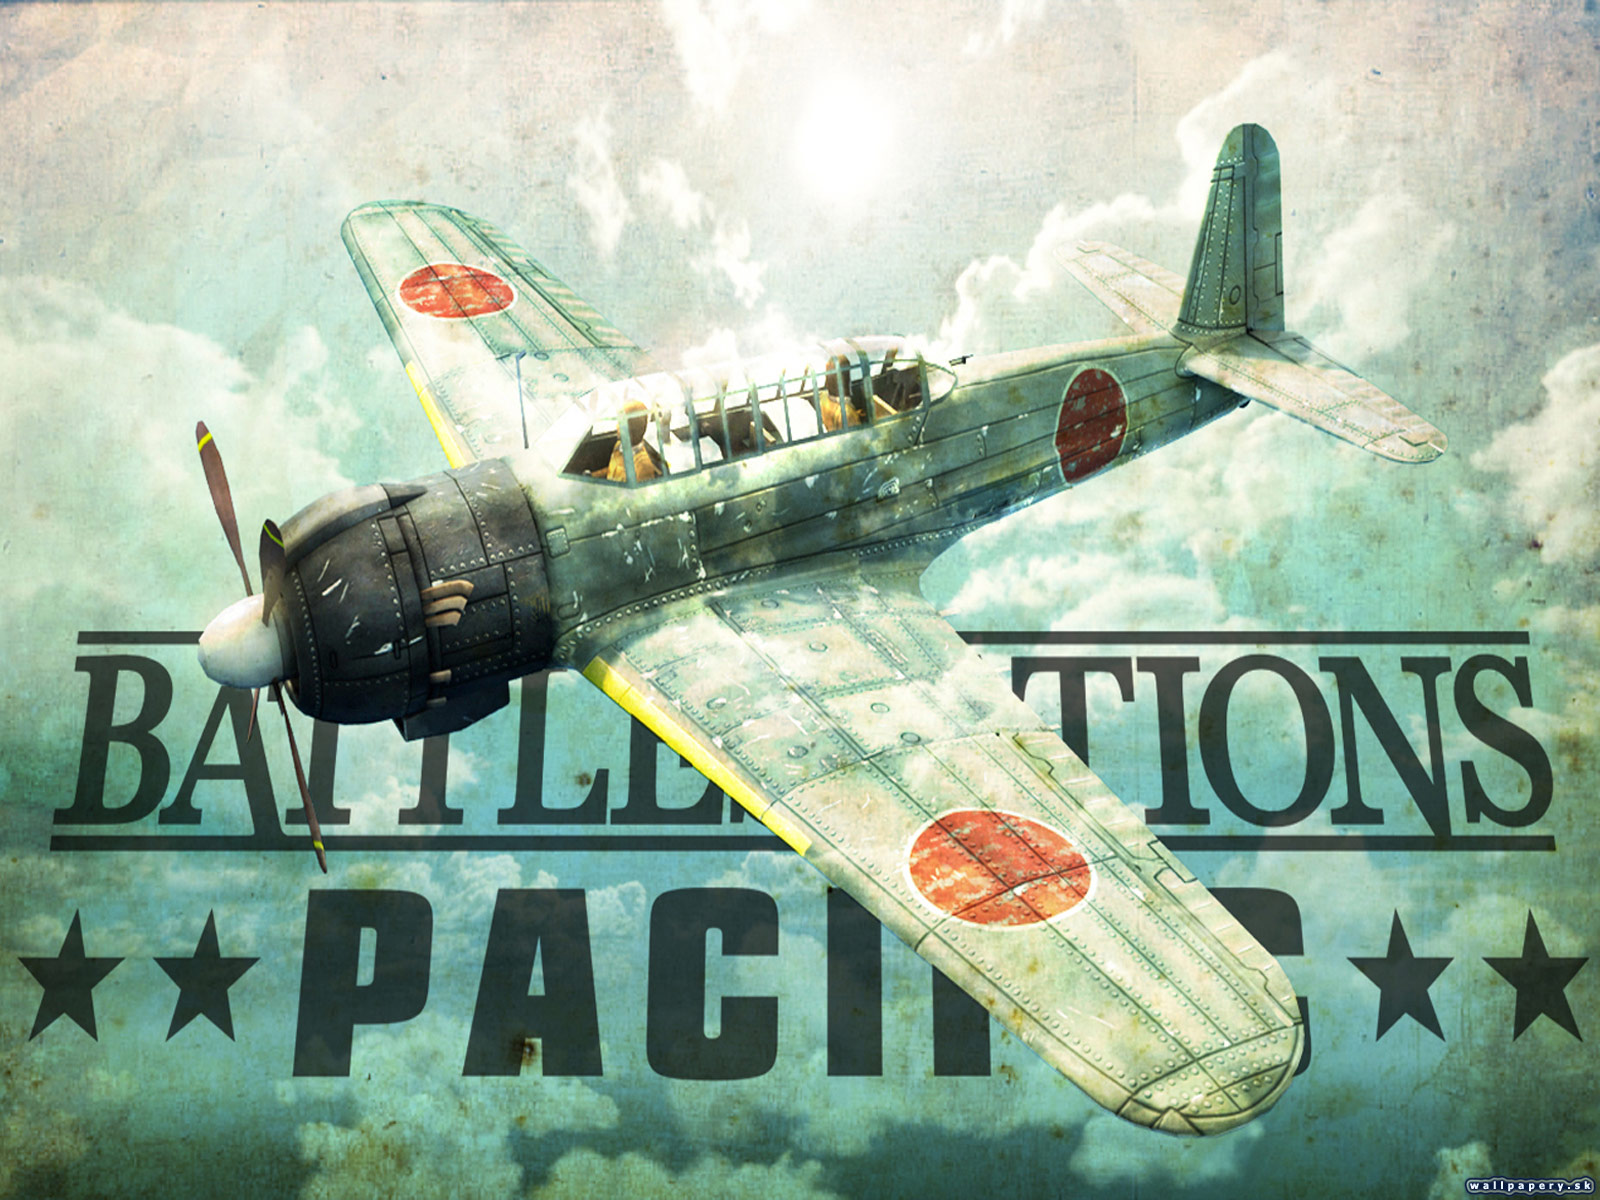 Battlestations: Pacific - wallpaper 7